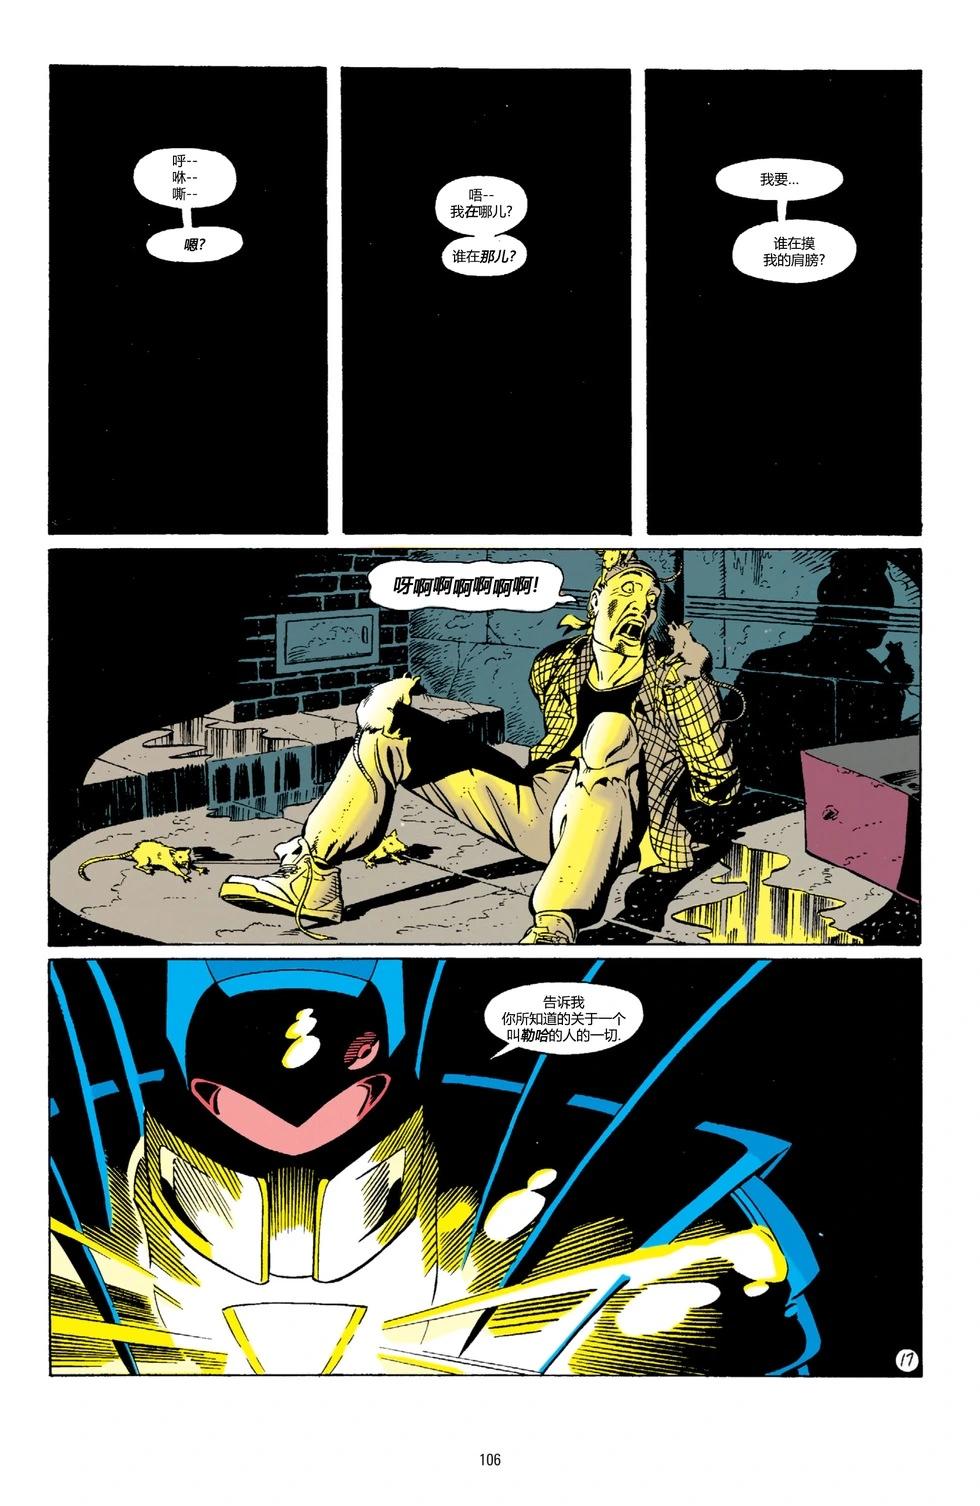 蝙蝠俠：騎士隕落 - 062-偵探漫畫#676 - 6